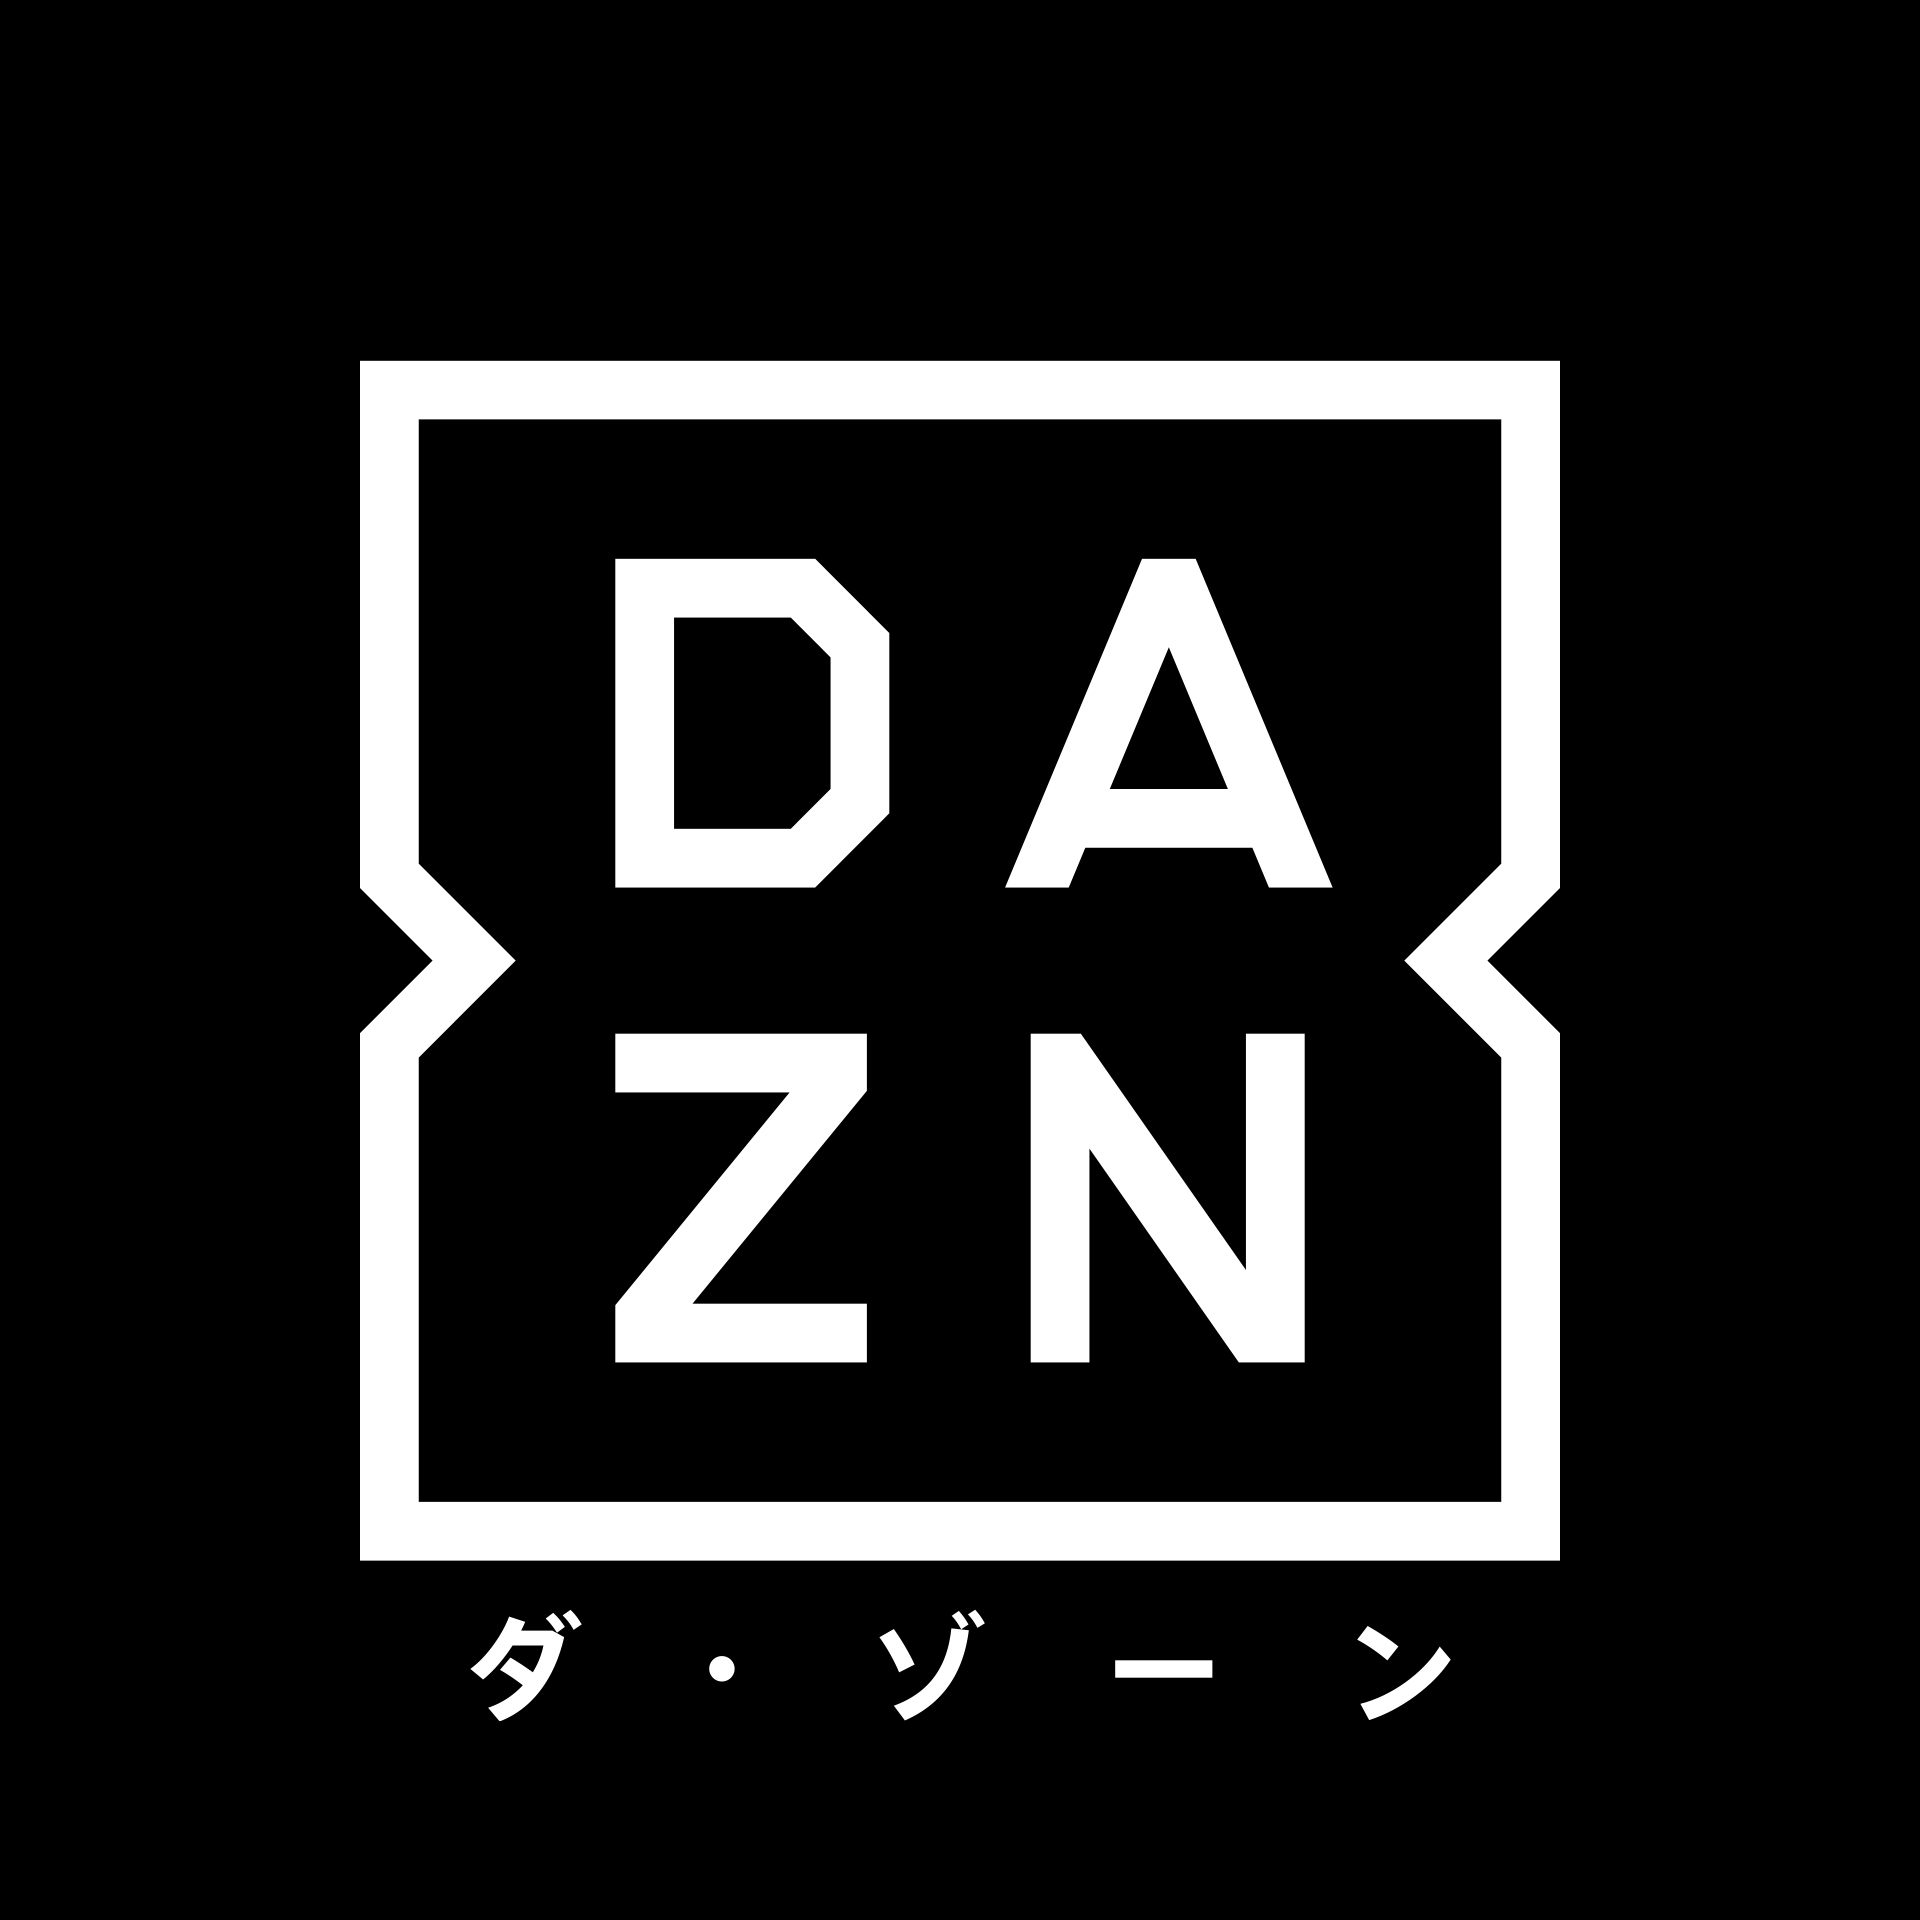 スポーツのライブストリーミングサービス Dazn ダ ゾーン 世界最高峰のクラブが所属するリーガ エスパニョーラの 注目5試合を17年4月1日 土 よりライブにて放映決定 Daznのプレスリリース